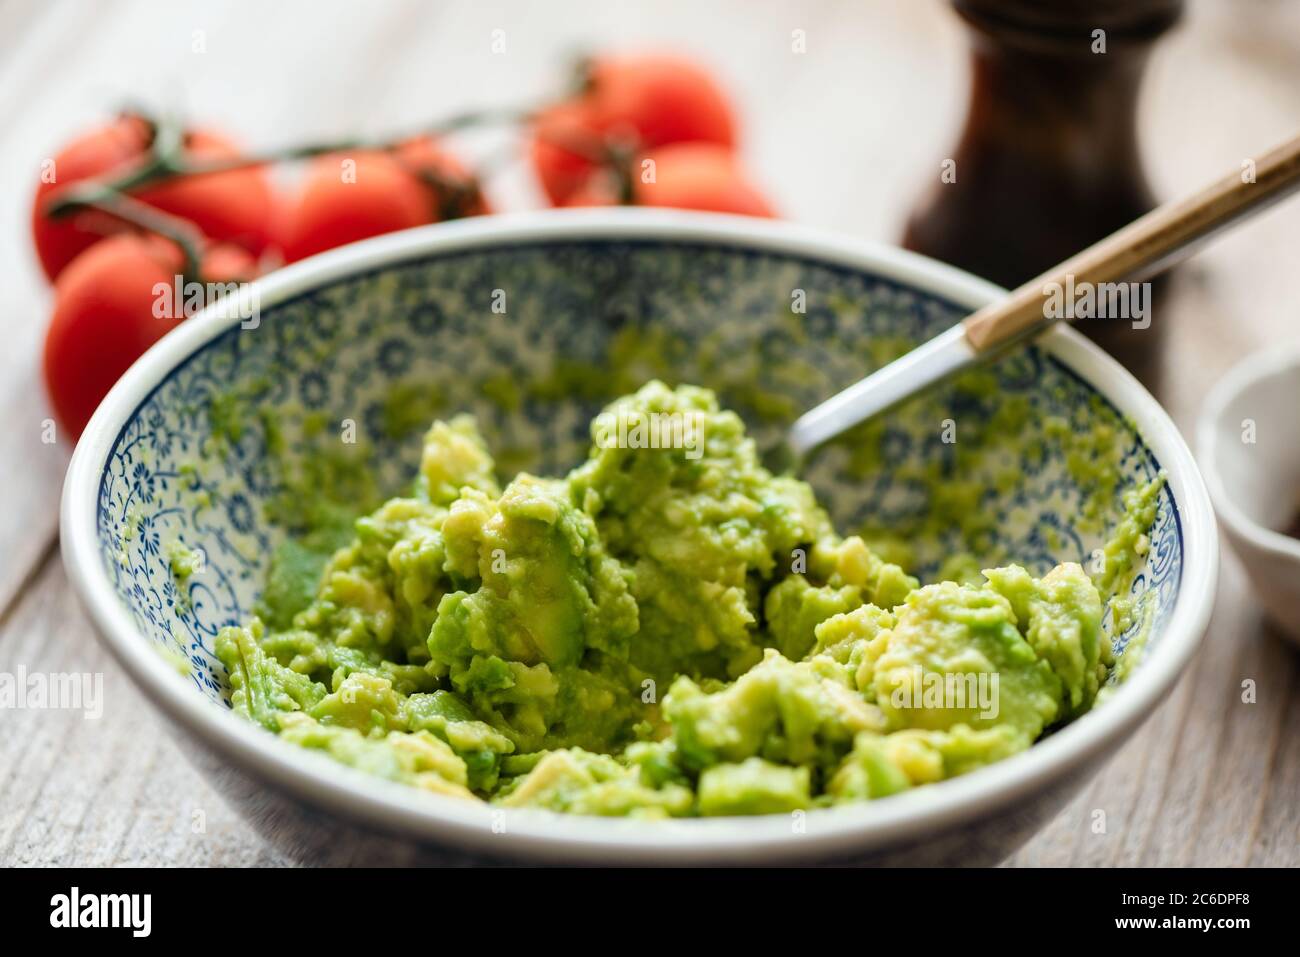 Mashed avocado in a bowl. Guacamole sauce, avocado mash. Closeup view, selective focus Stock Photo